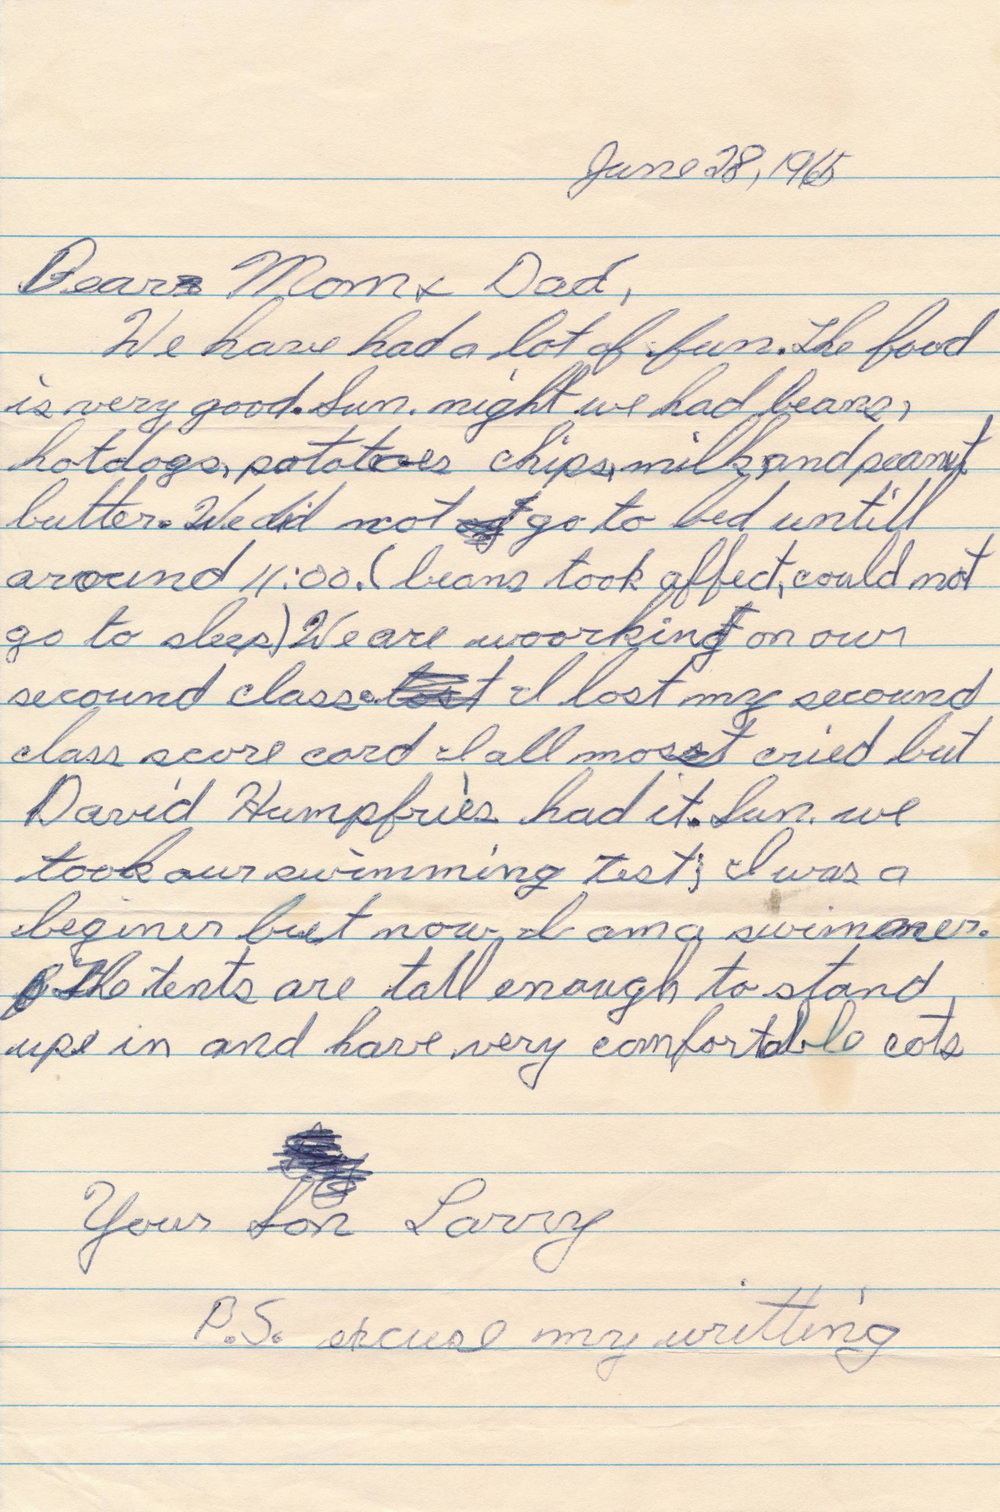 Larry's Letter